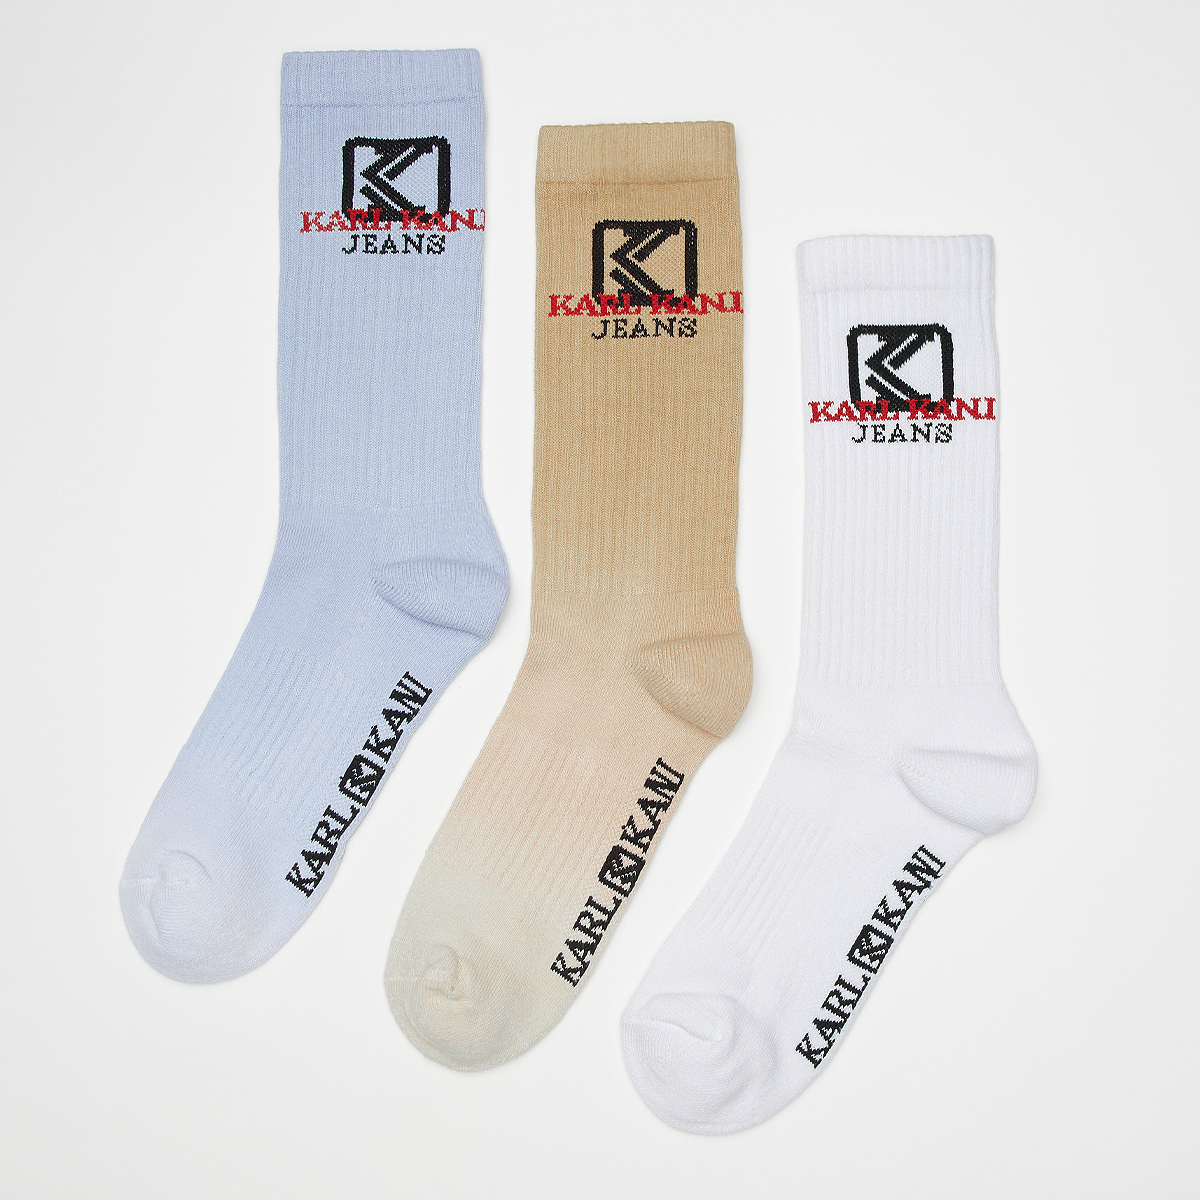 Karl Kani Gradient Socks (3 Pack) Lang Heren blue sand white maat: 35-38 beschikbare maaten:35-38 39-42 43-46